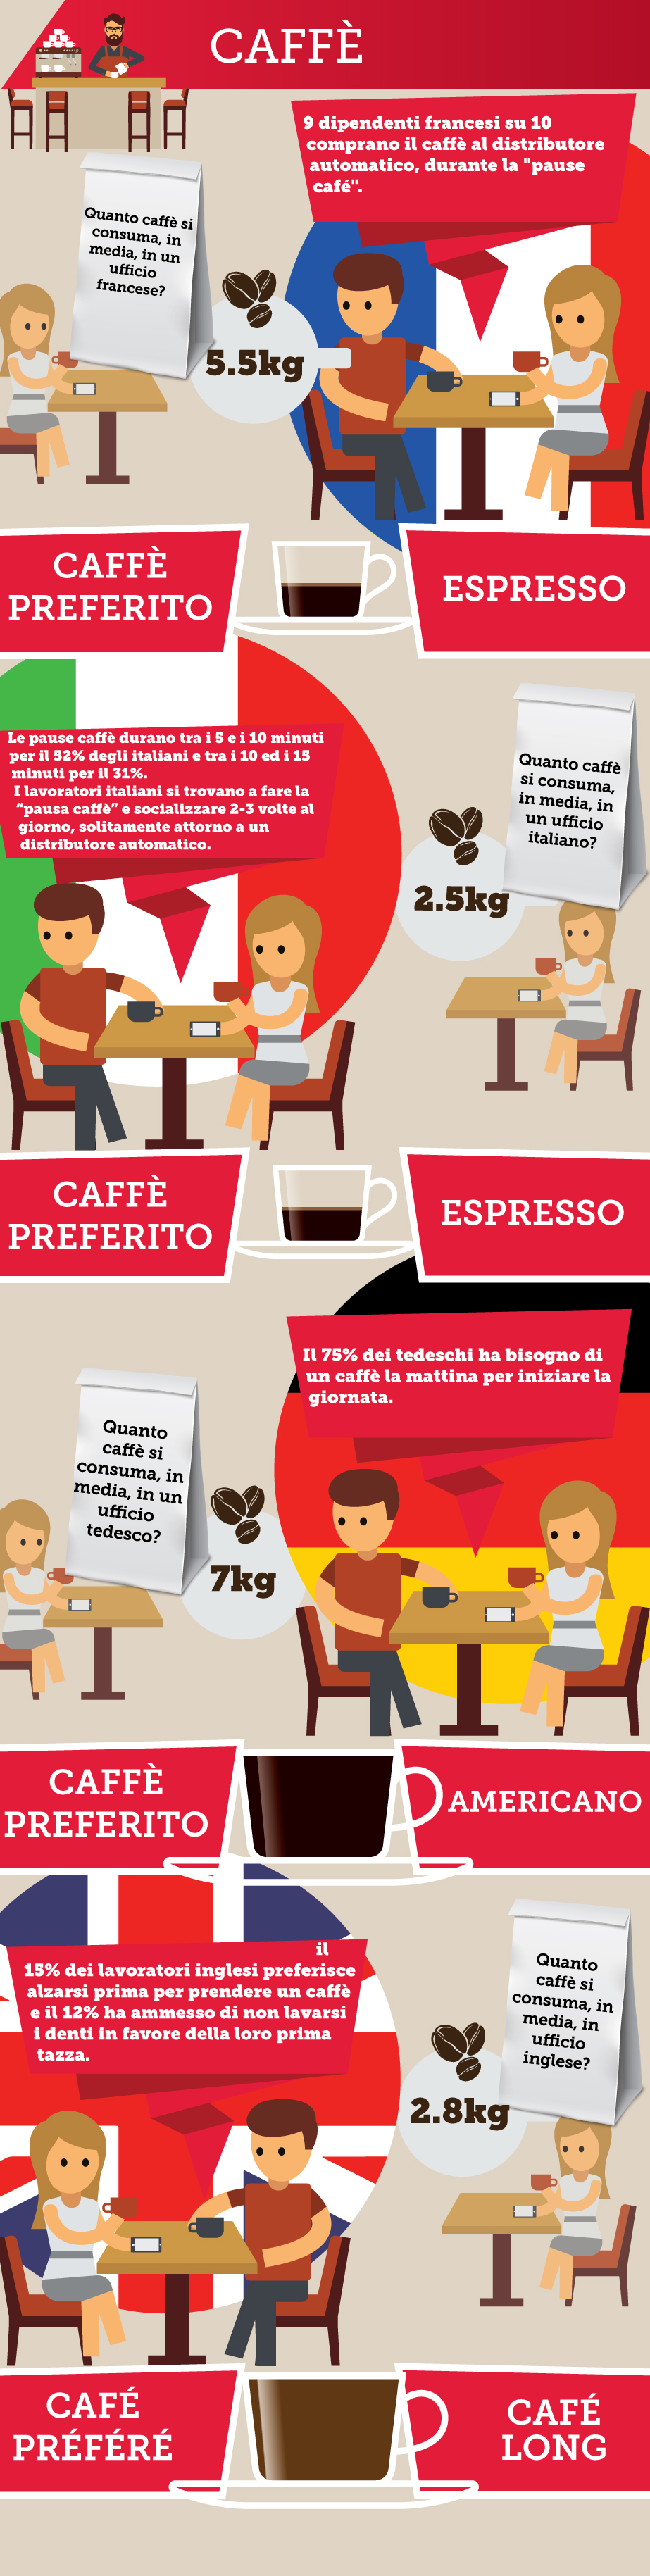 Differenze in Ufficio - Caffè